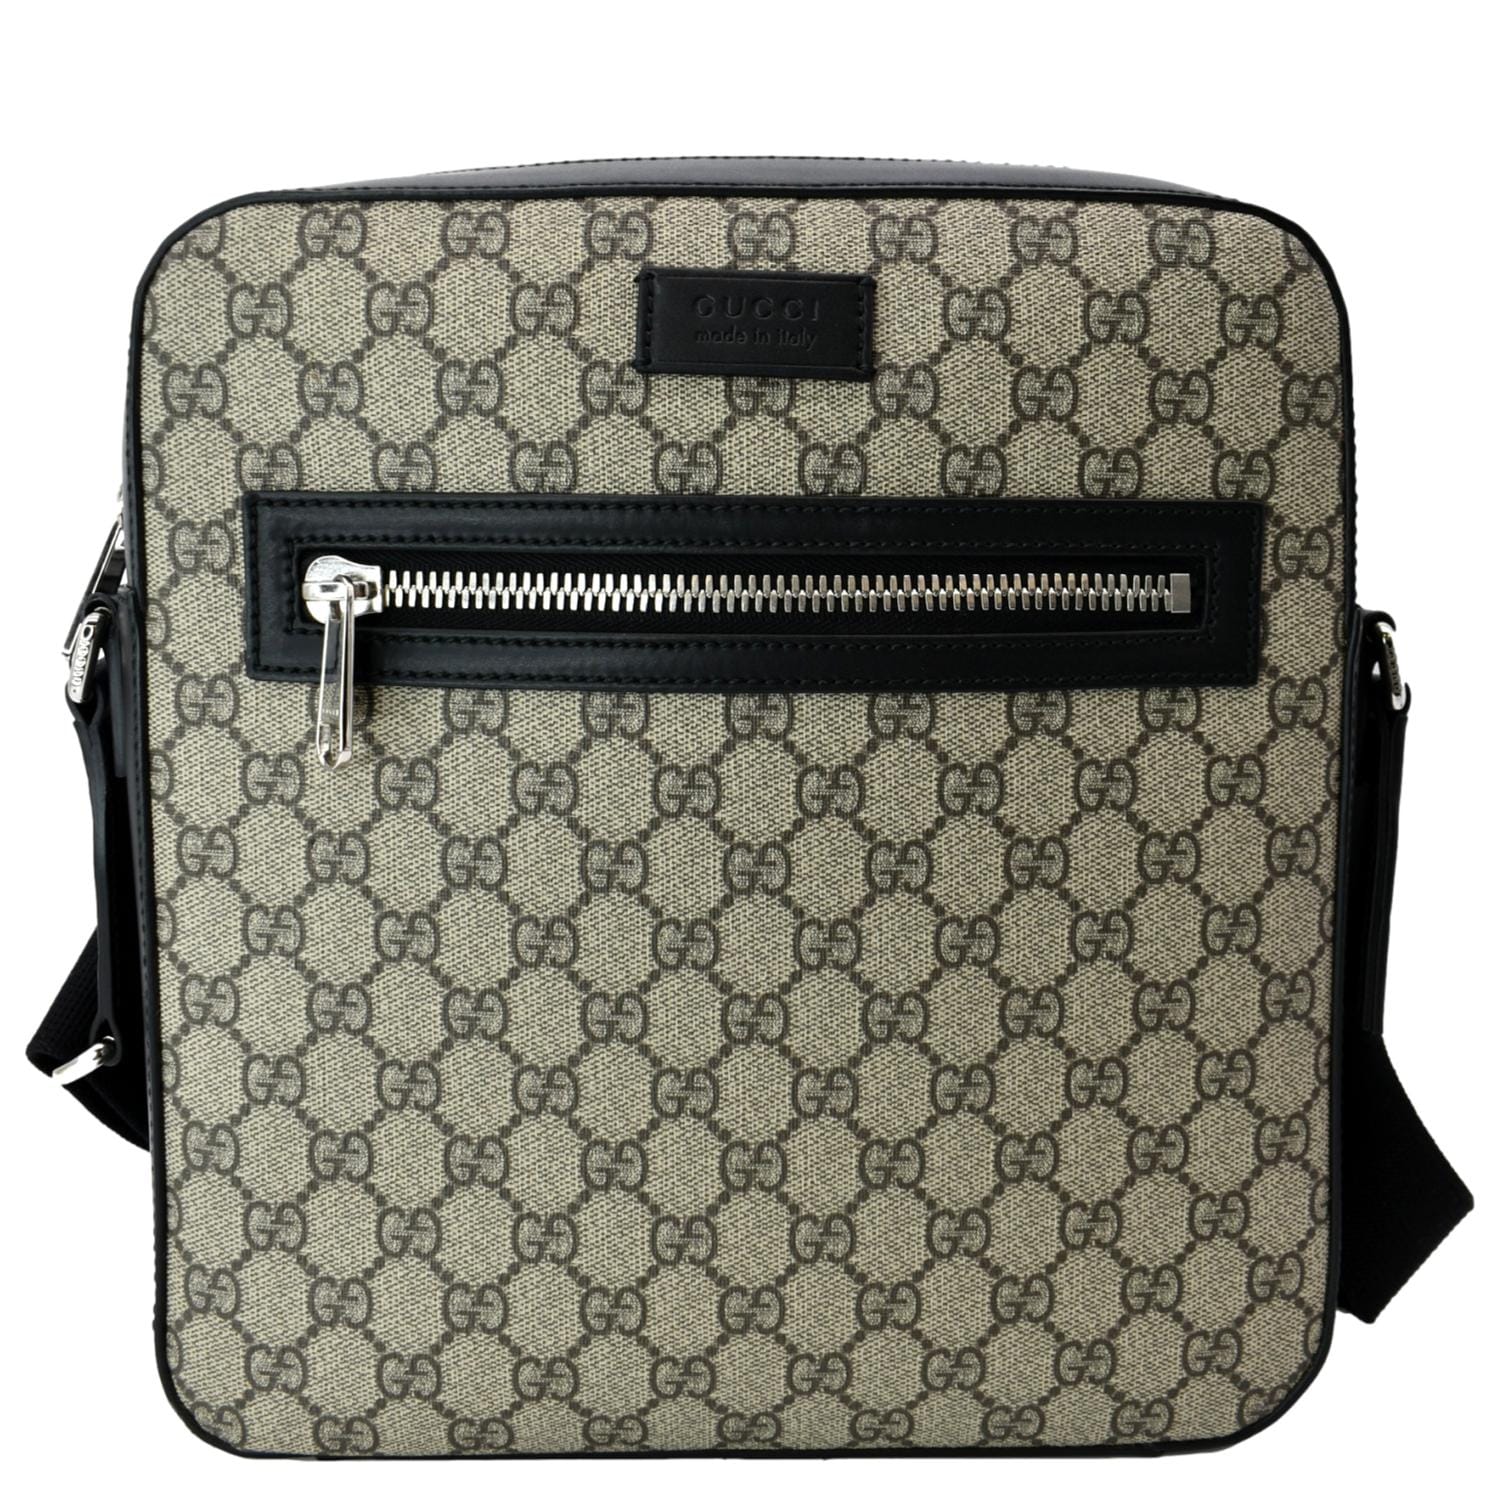 Gucci GG Supreme Canvas Messenger Shoulder Bag in Beige